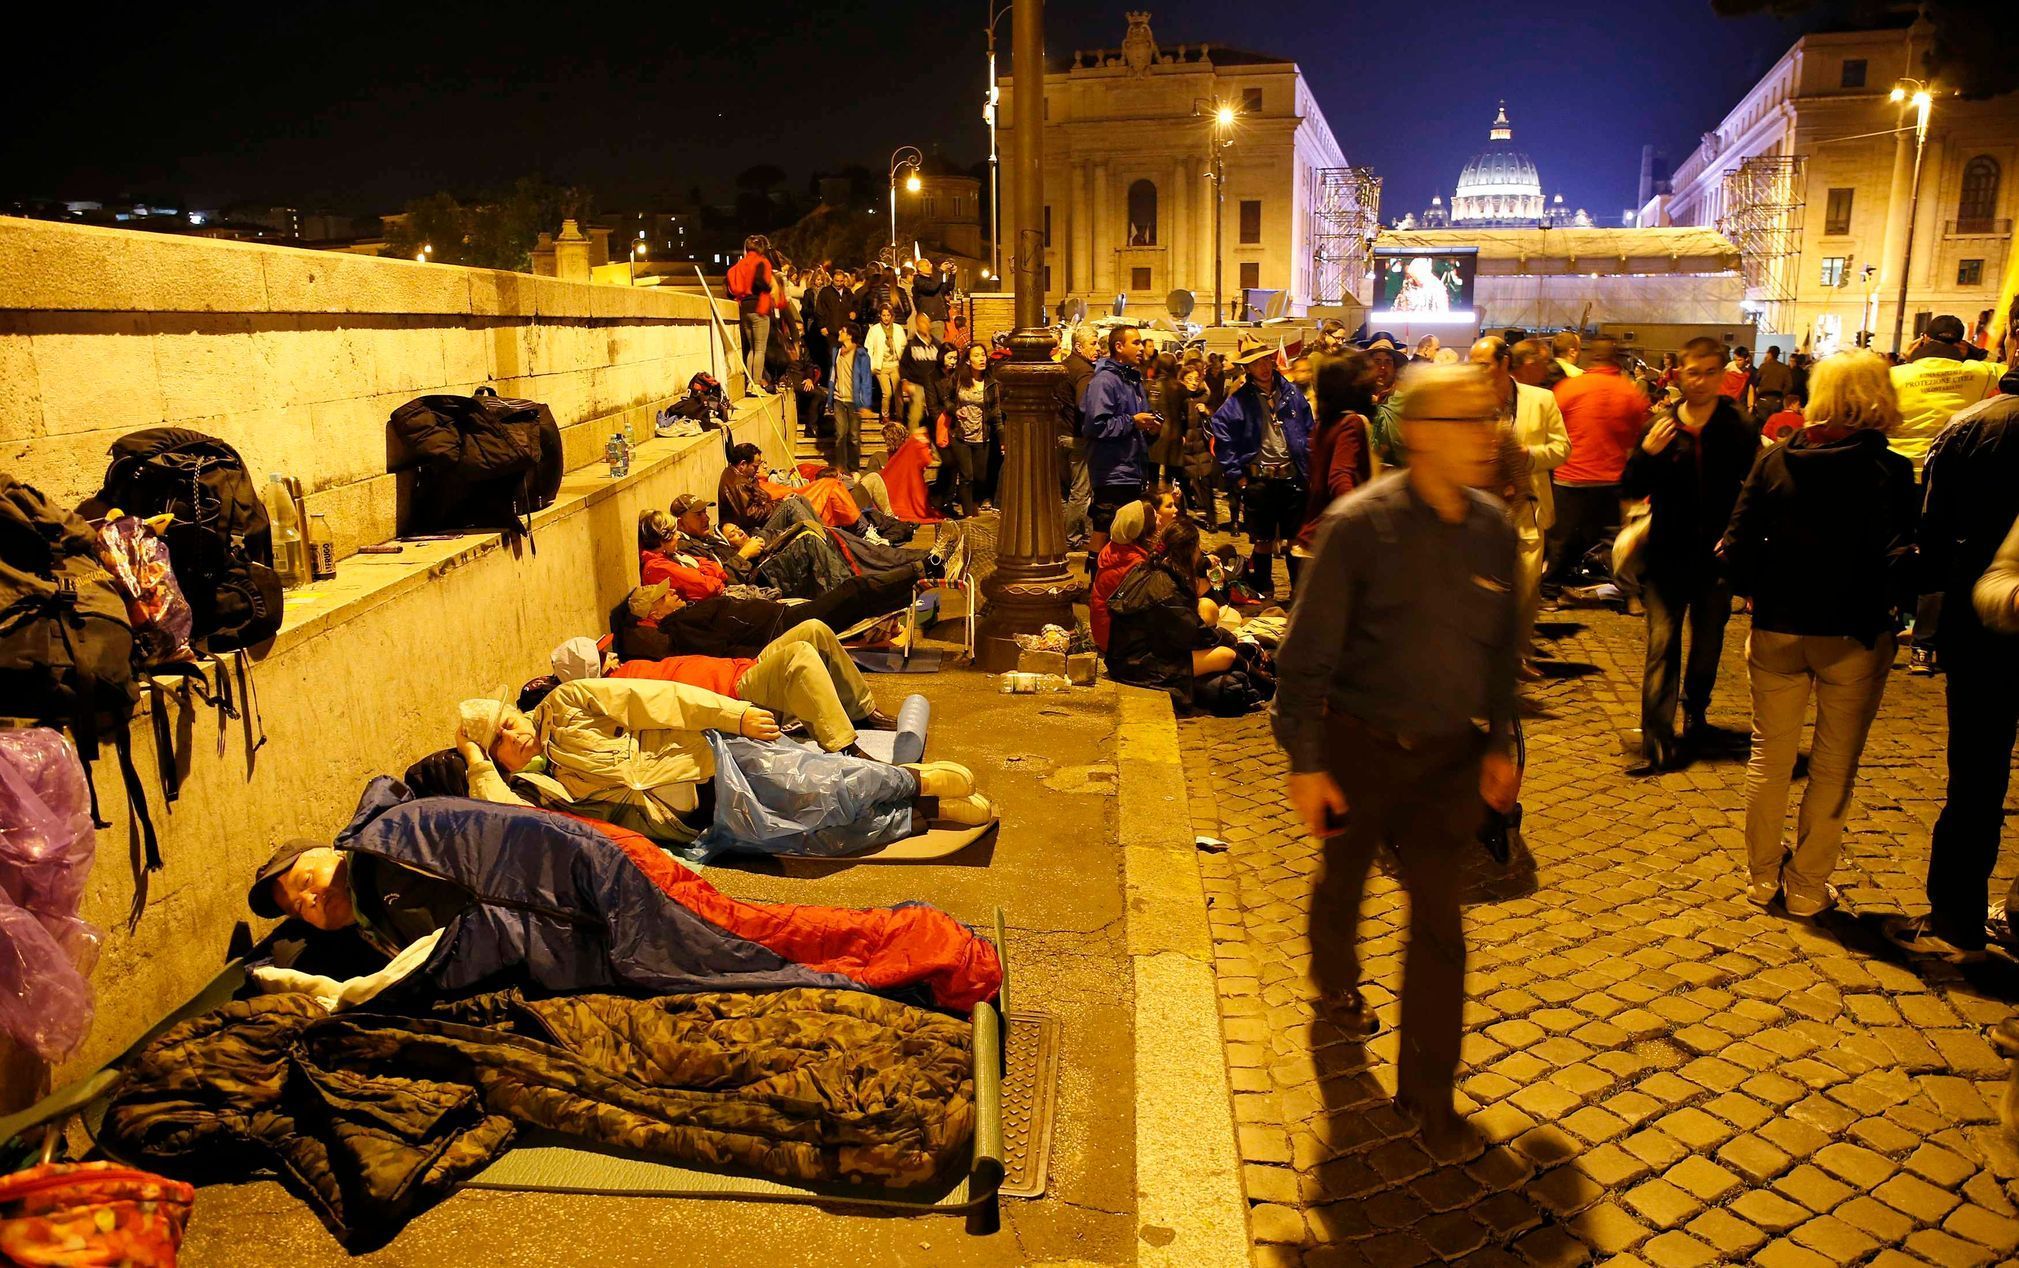 Věřící nocují v ulicích. Čekají na svatořečení papežů.